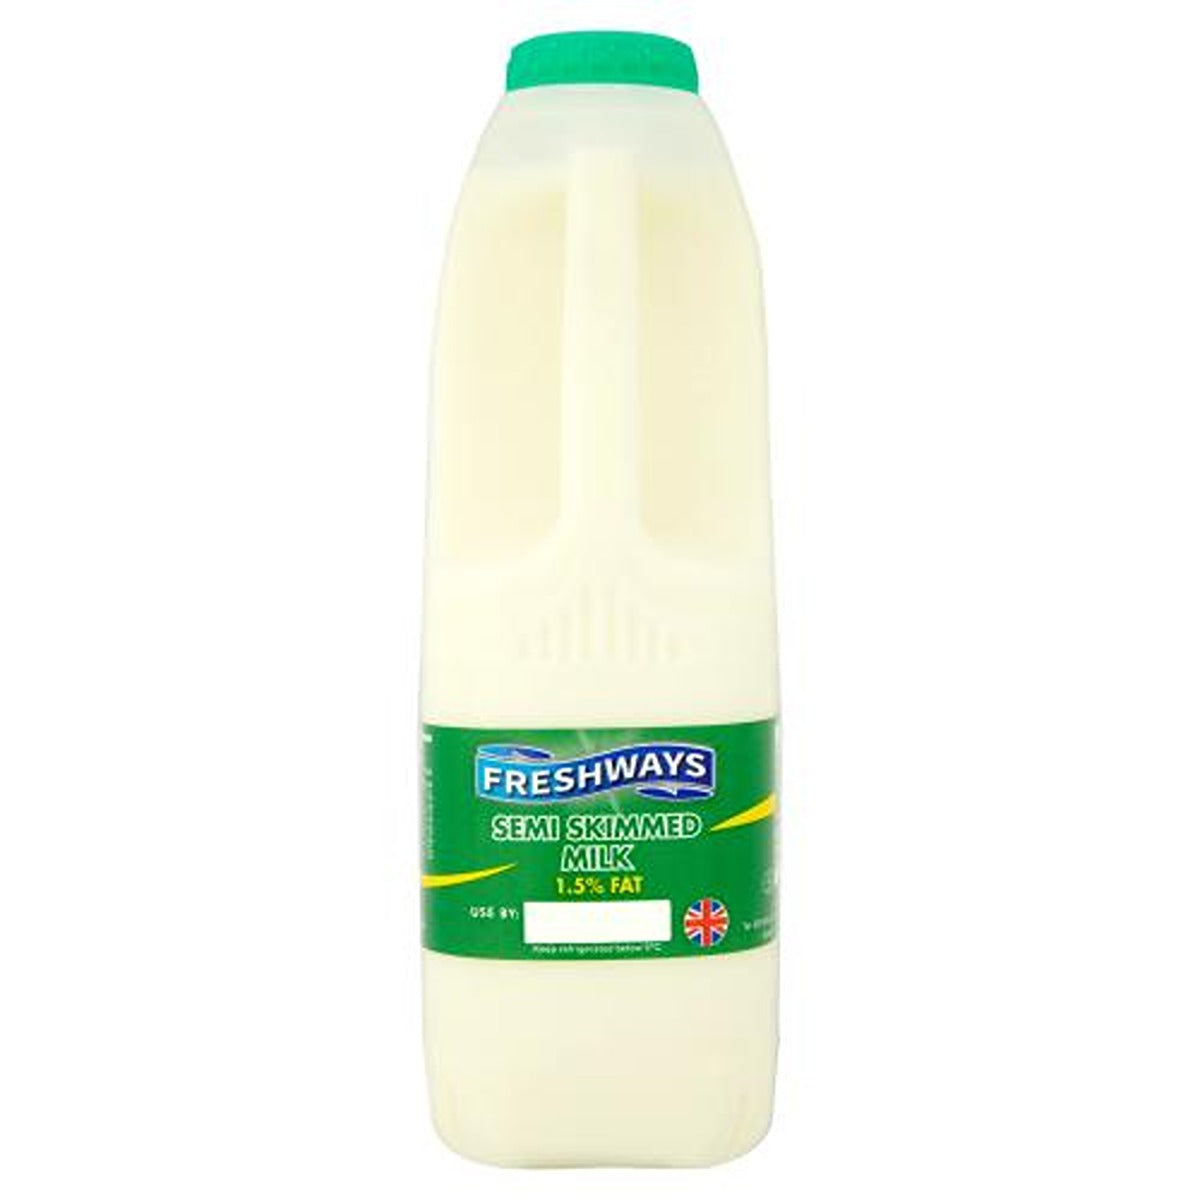 Freshways - Semi Skimmed Milk - 1L - Continental Food Store